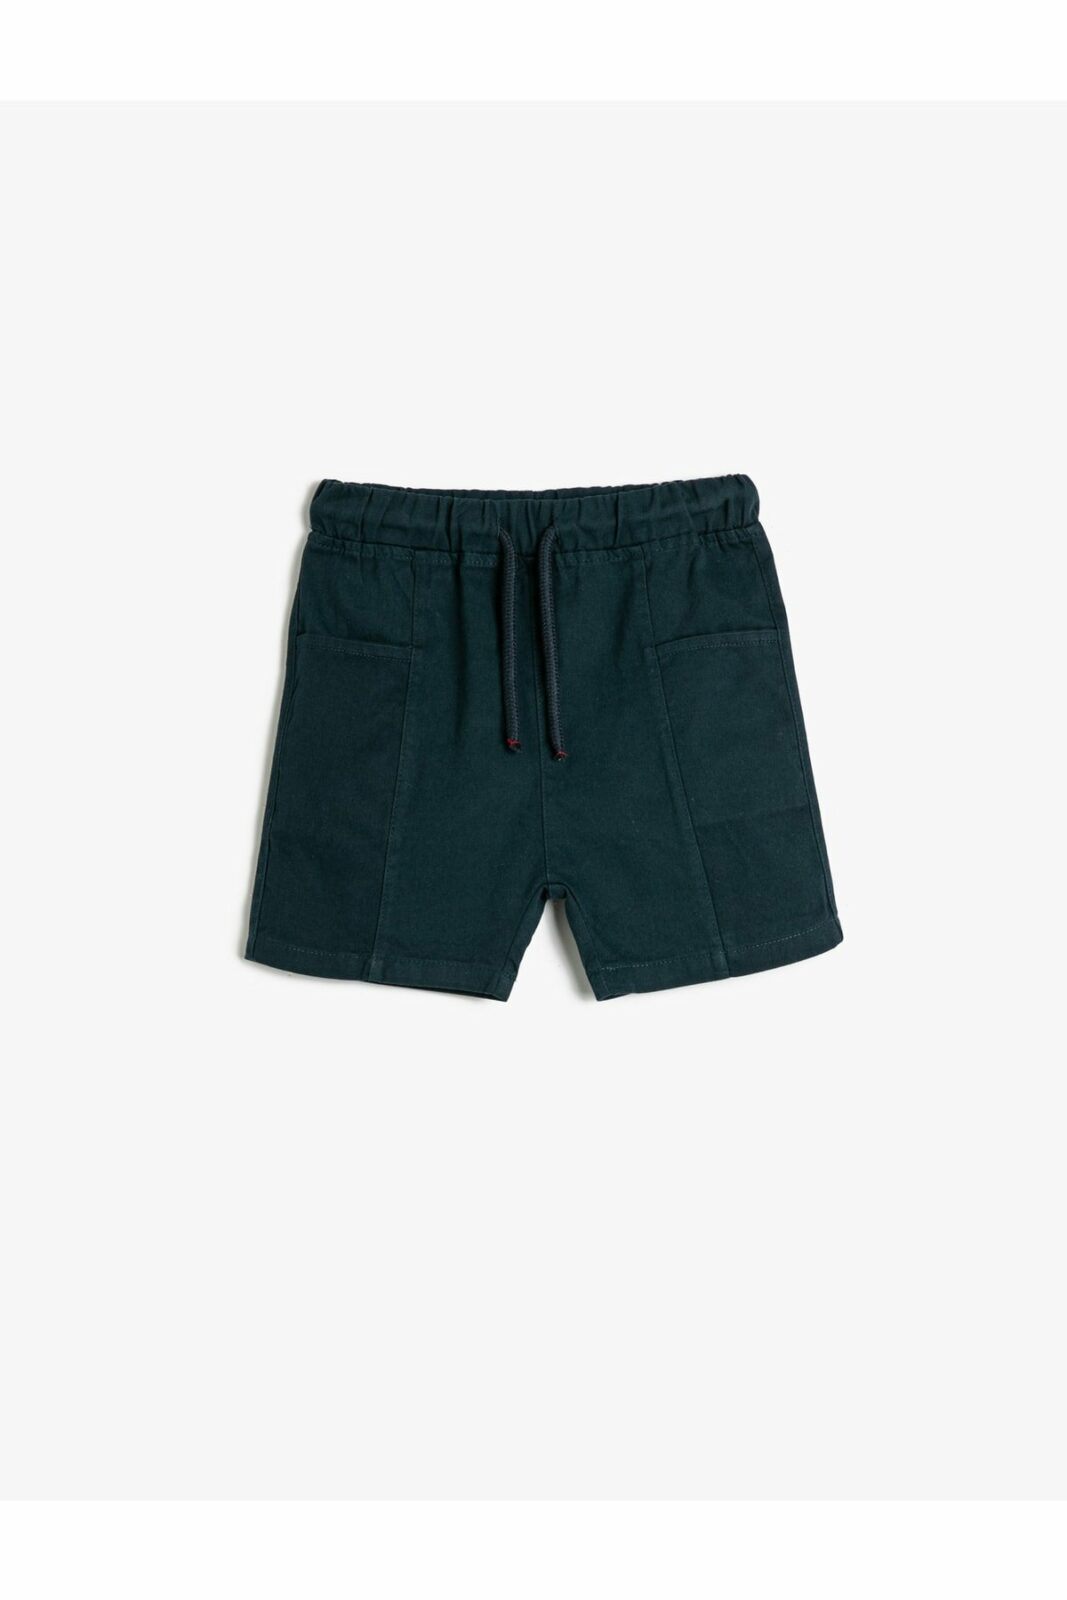 Koton Shorts - Navy